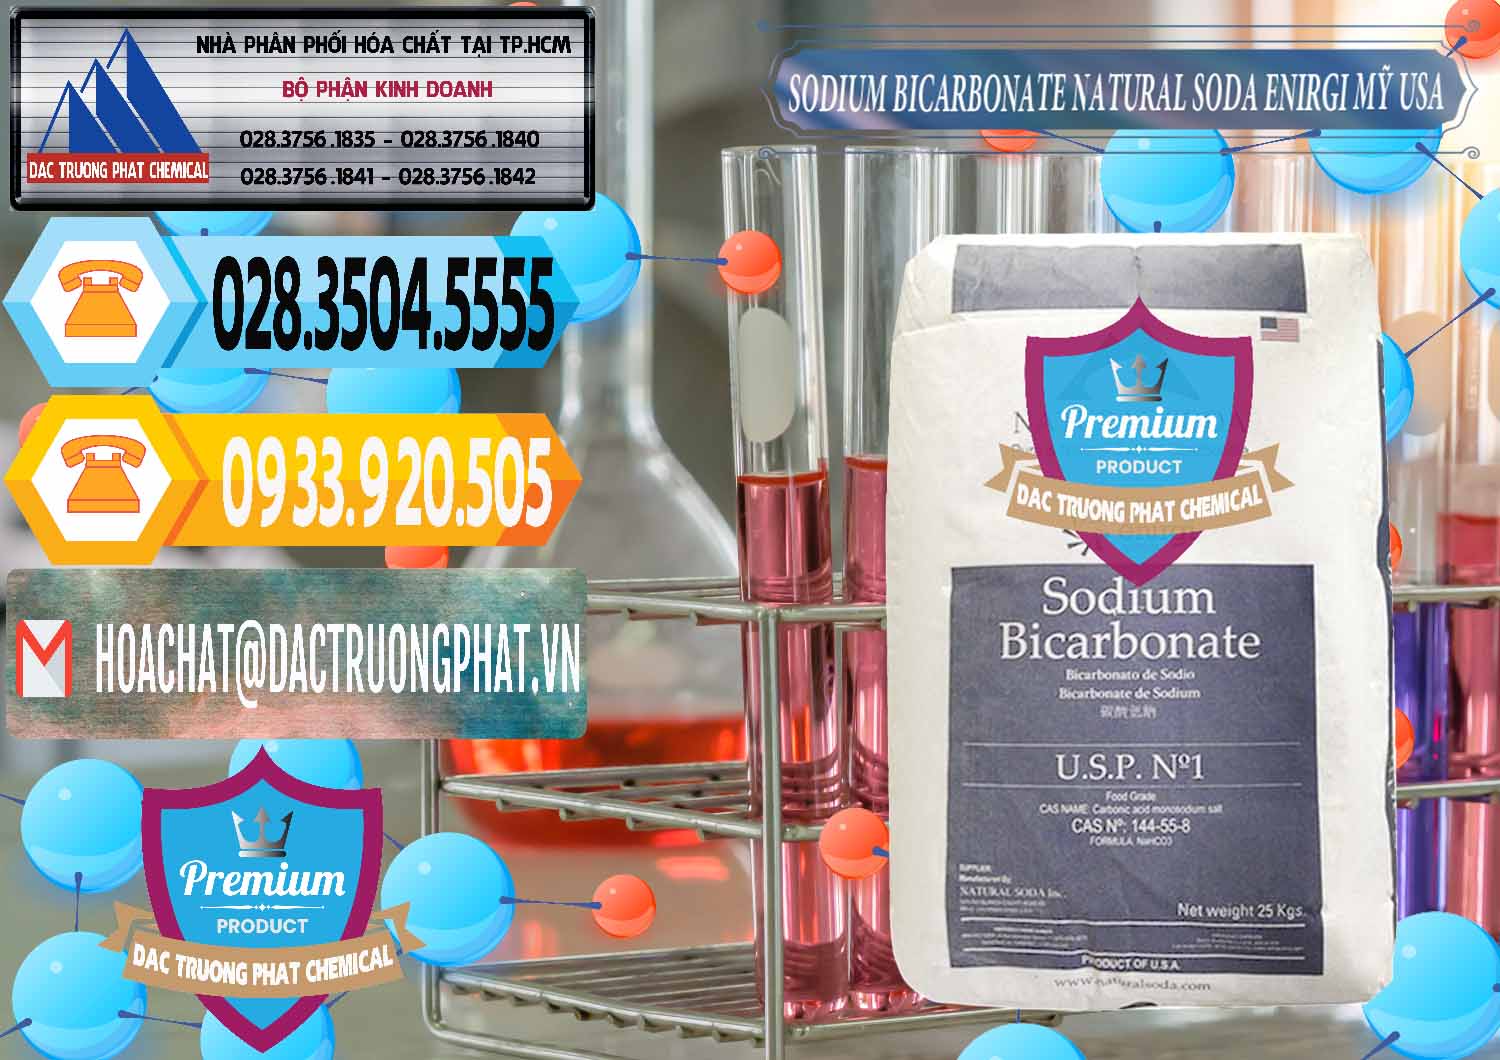 Công ty chuyên kinh doanh và bán Sodium Bicarbonate – Bicar NaHCO3 Food Grade Natural Soda Enirgi Mỹ USA - 0257 - Cung cấp - phân phối hóa chất tại TP.HCM - hoachattayrua.net